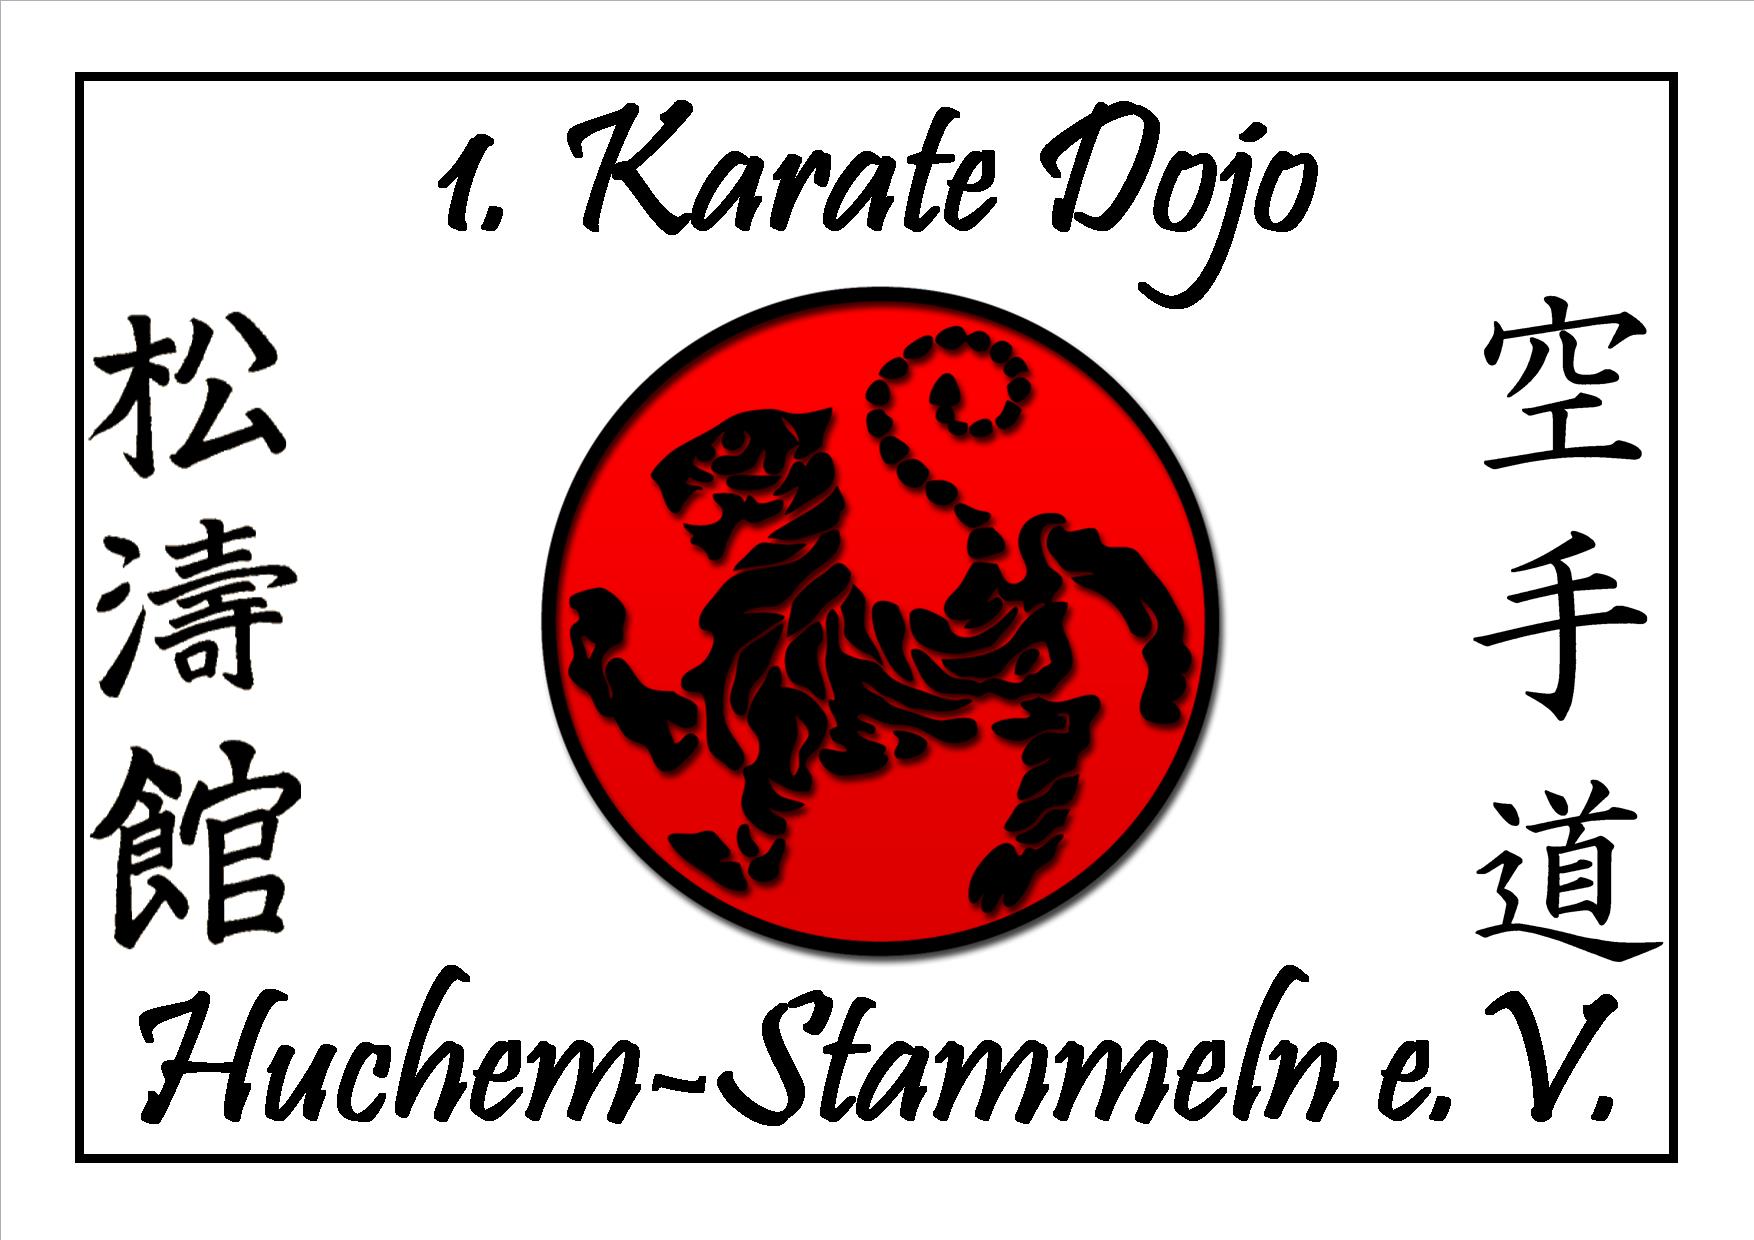 1. Karate Dojo Huchem-Stammeln e.V.